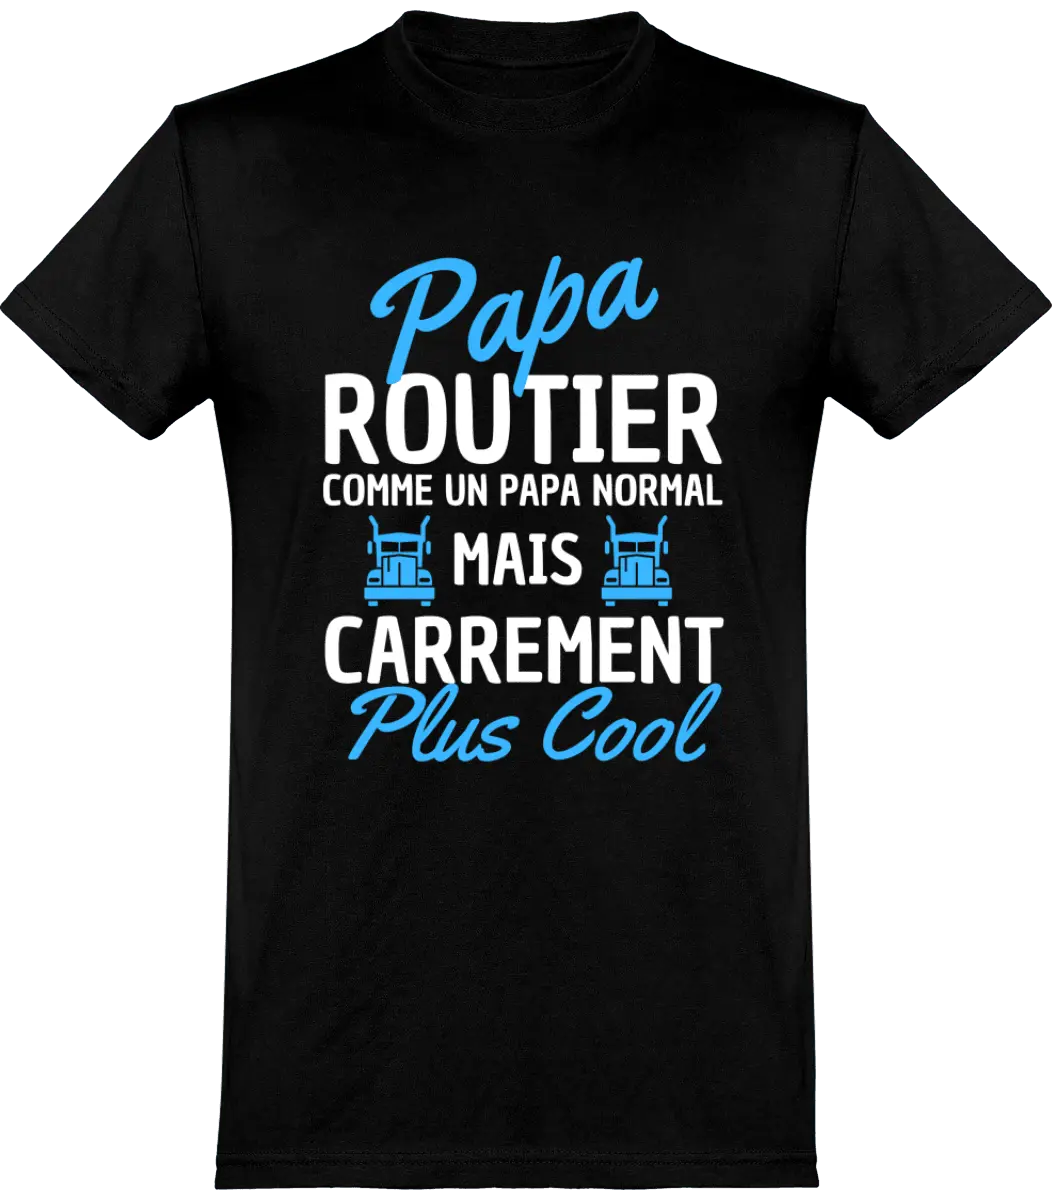 T-shirt Routier "Papa routier comme un papa normal mais carrément plus cool" | Mixte - French Humour